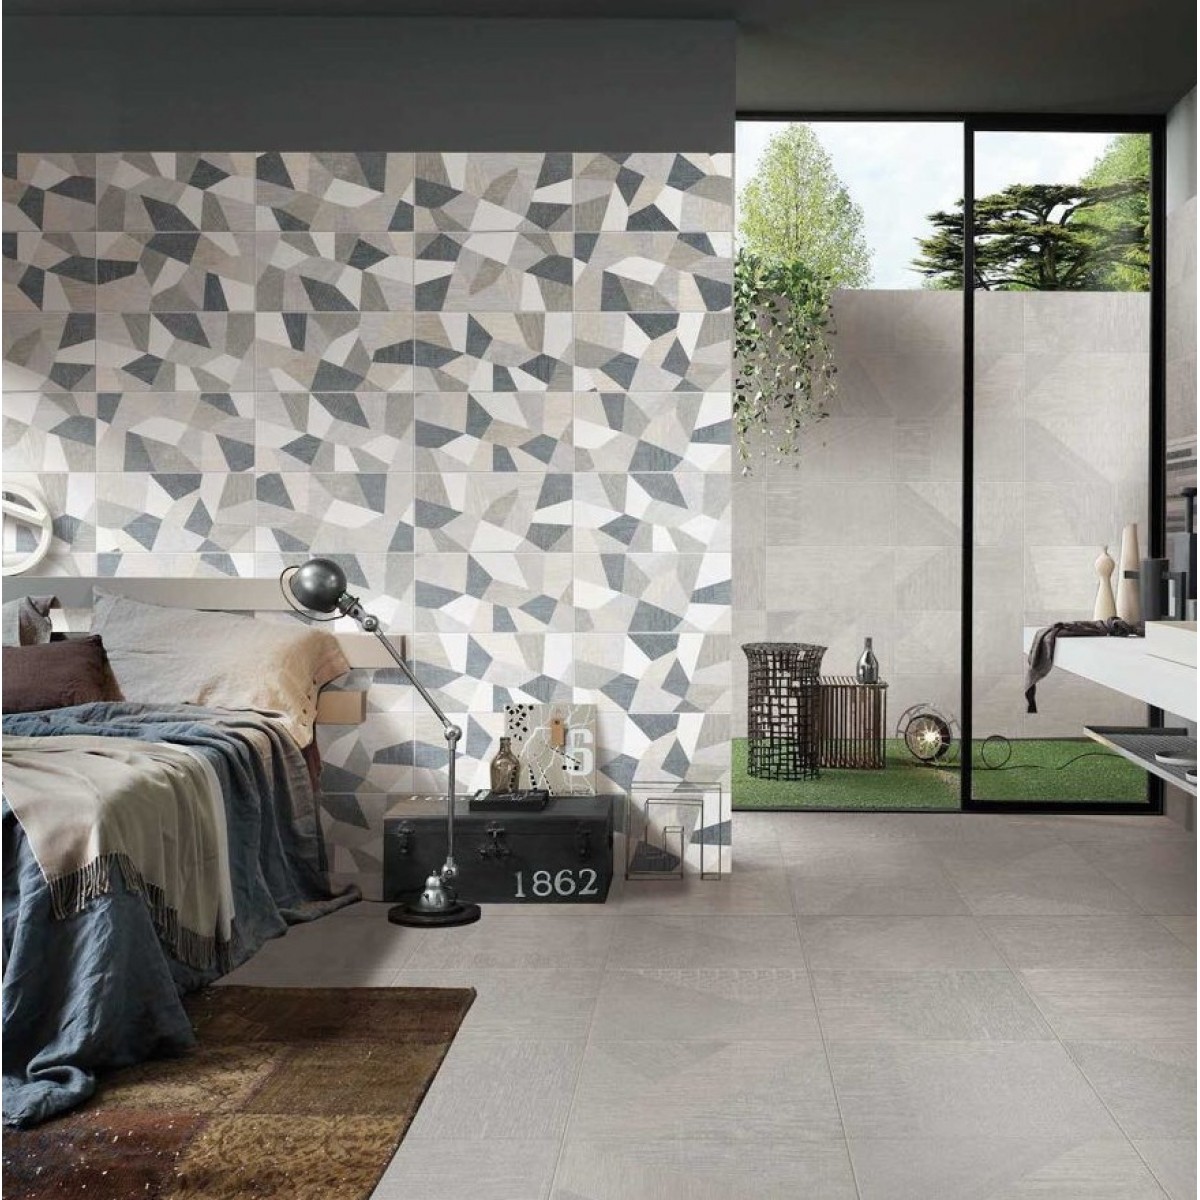 KITO金意陶瓷砖-现代仿古系列-梅森布纹花片 卫生间墙砖地砖